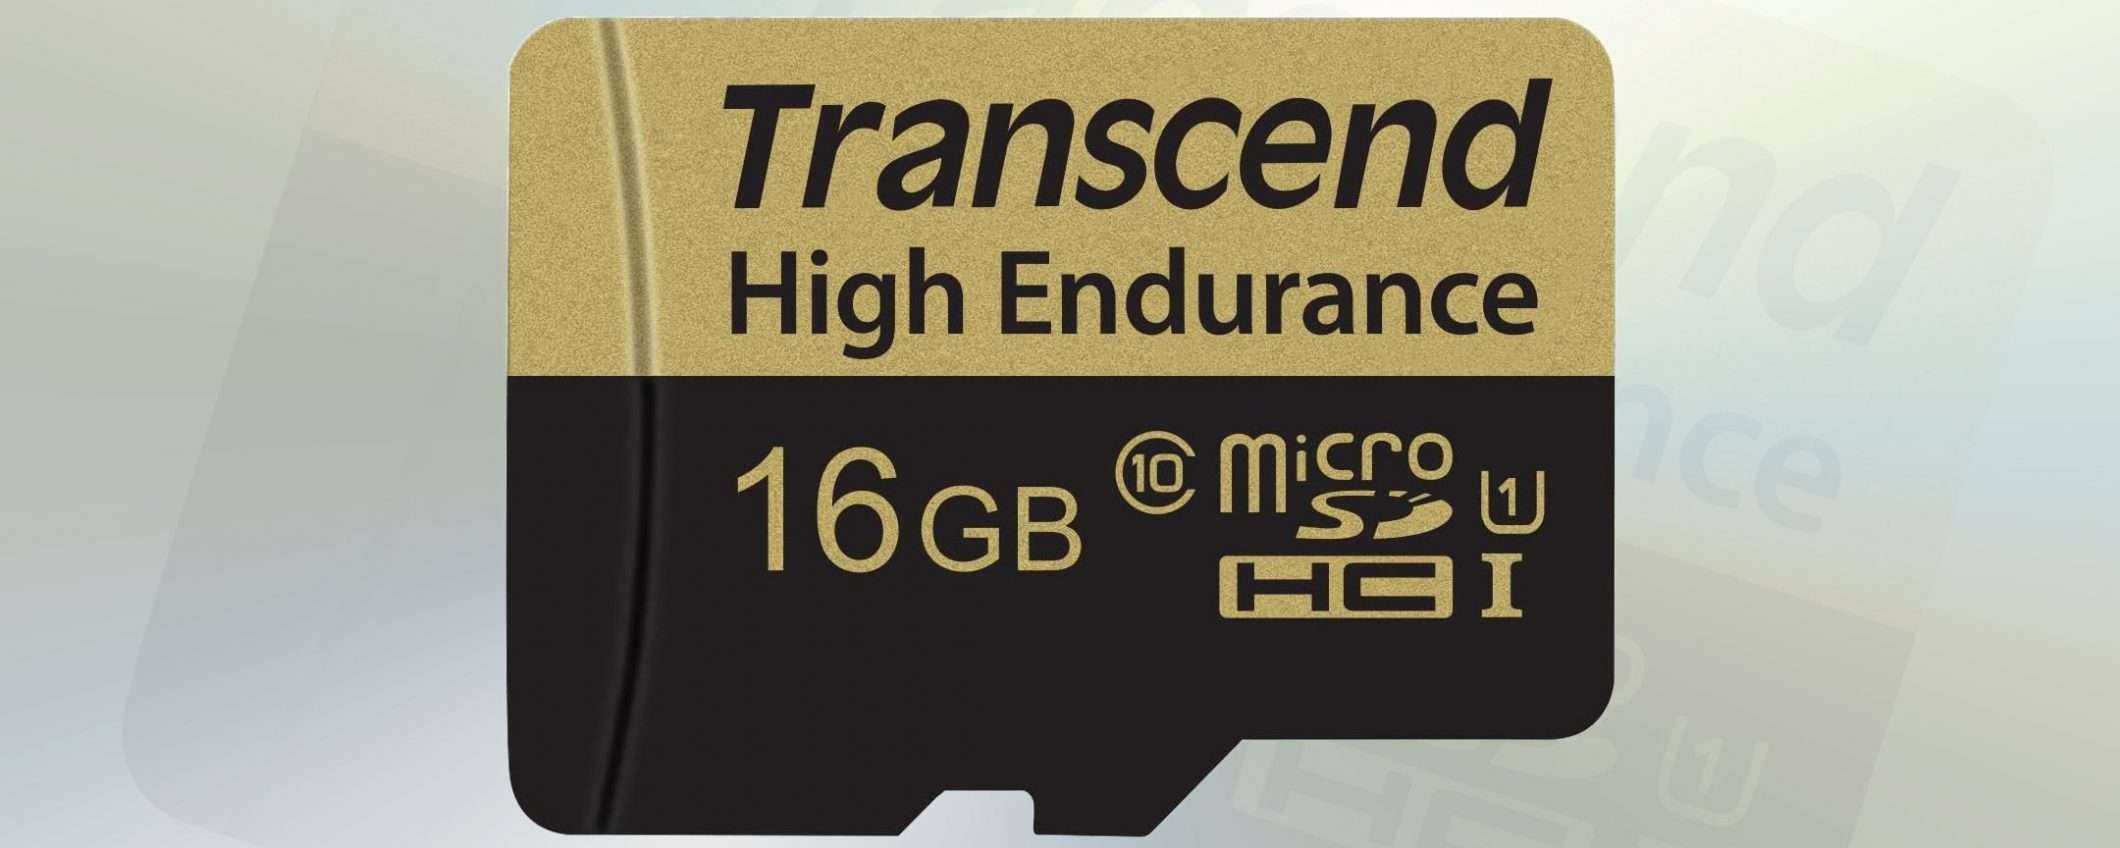 MicroSD, 16GB High Endurance a prezzo stracciato